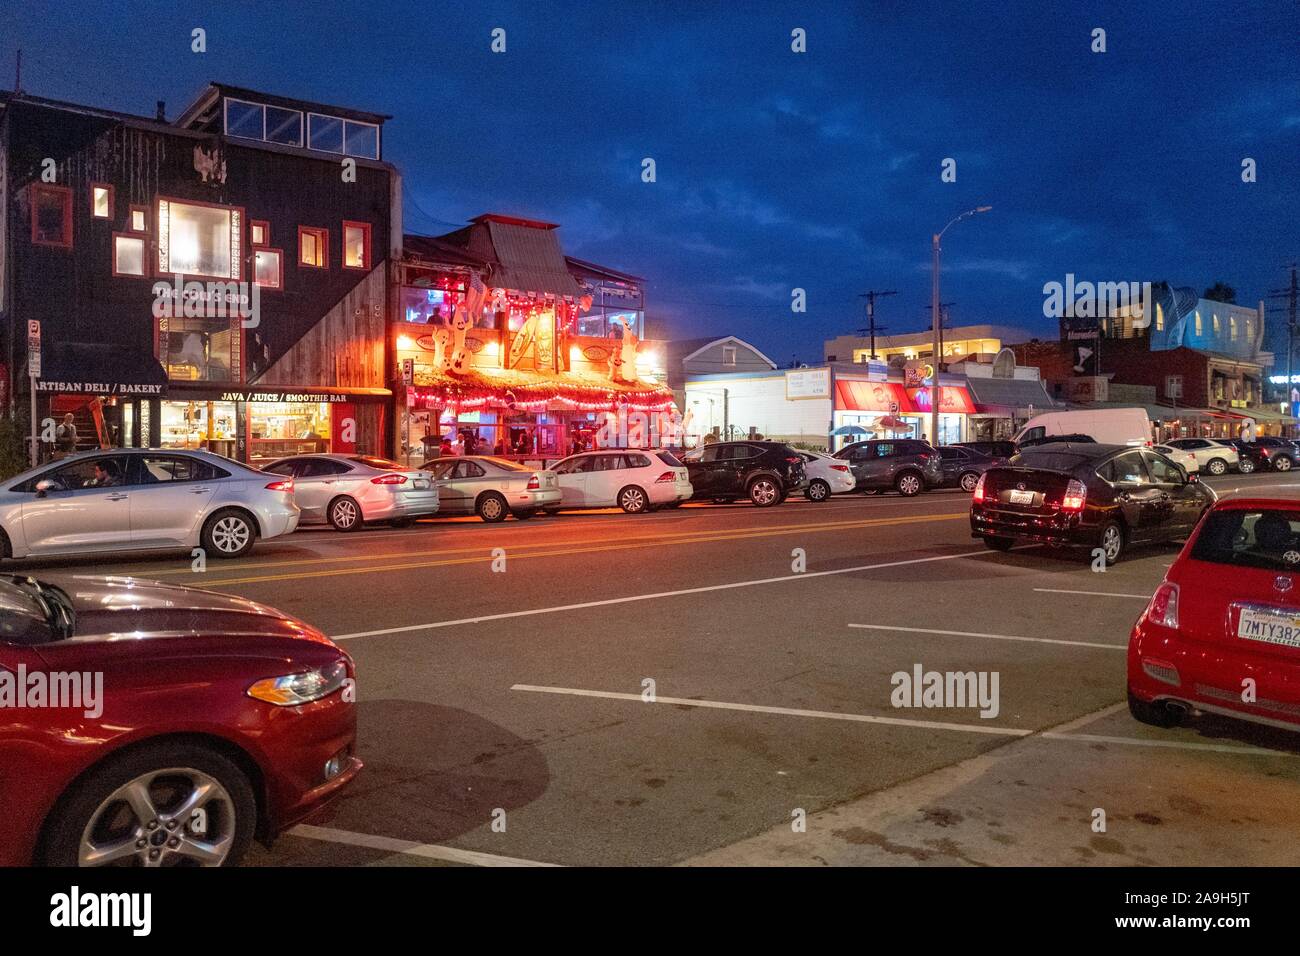 Vista nocturna de la brillantemente iluminada tiendas y restaurantes a lo largo de Washington Blvd, una de las calles principales de Venecia, la ciudad de Los Angeles, California, 27 de octubre de 2019. () Foto de stock